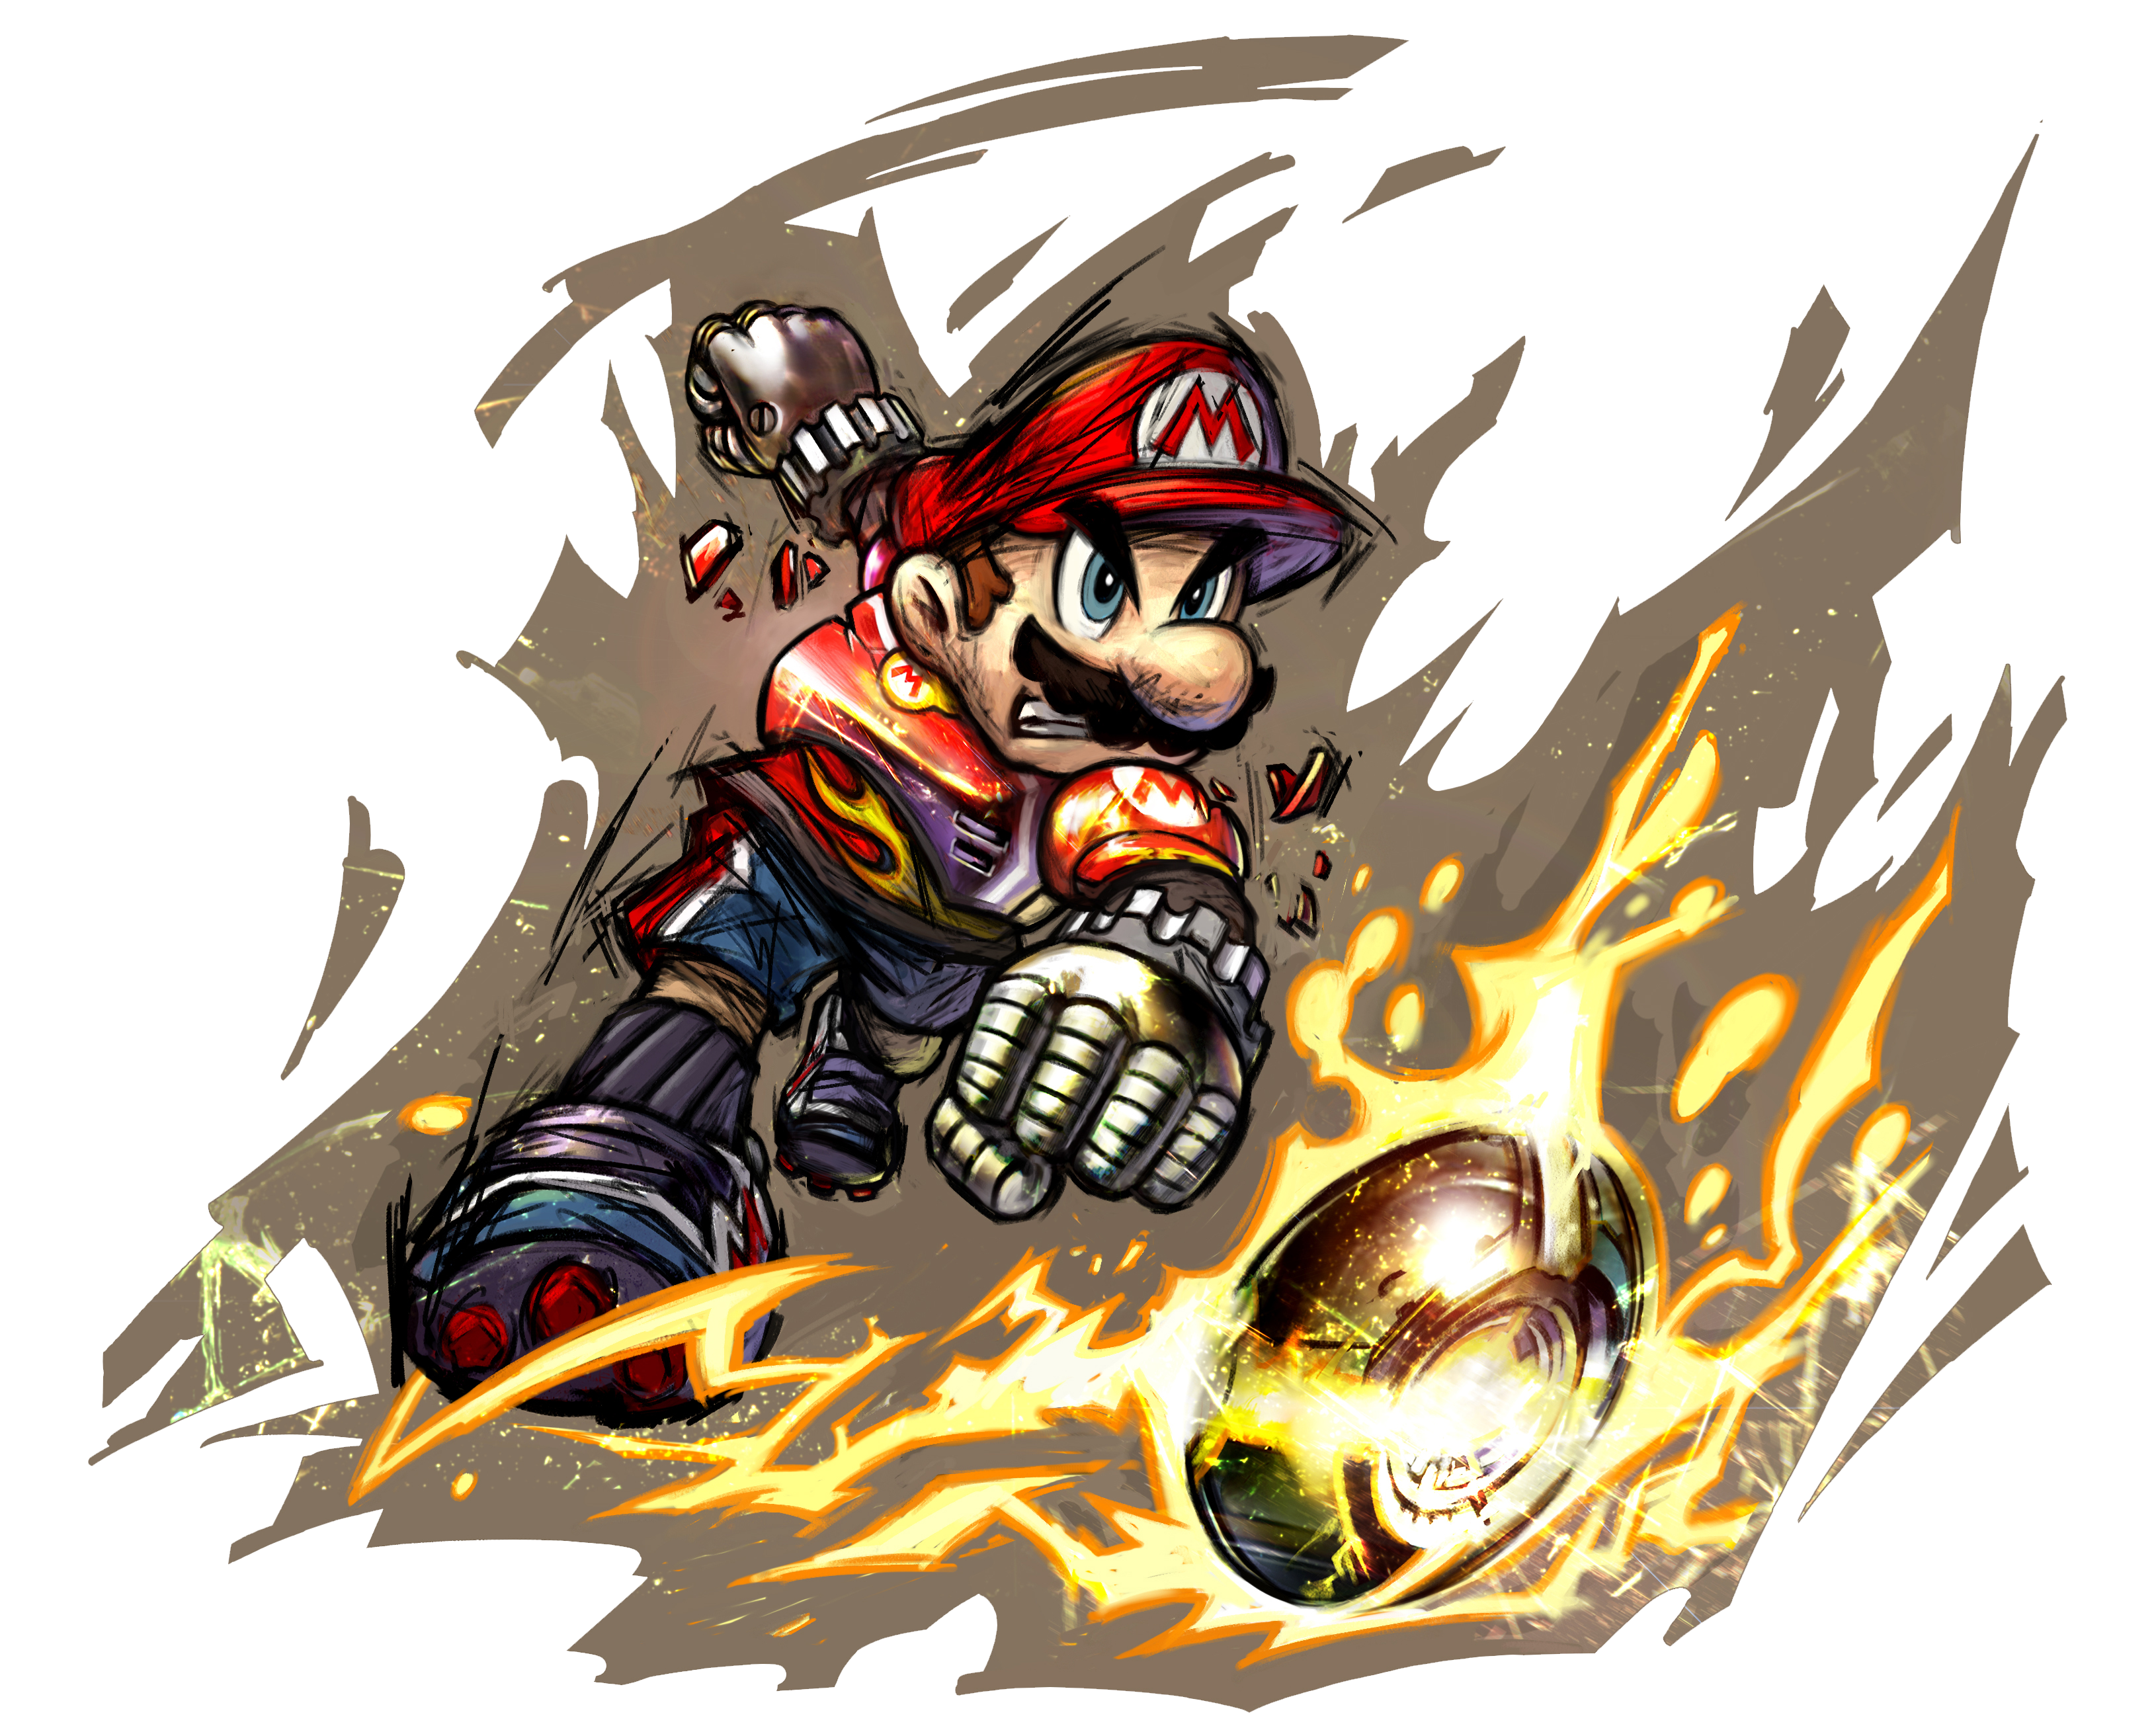 Super Mario Strikers - Super Mario Wiki, the Mario encyclopedia